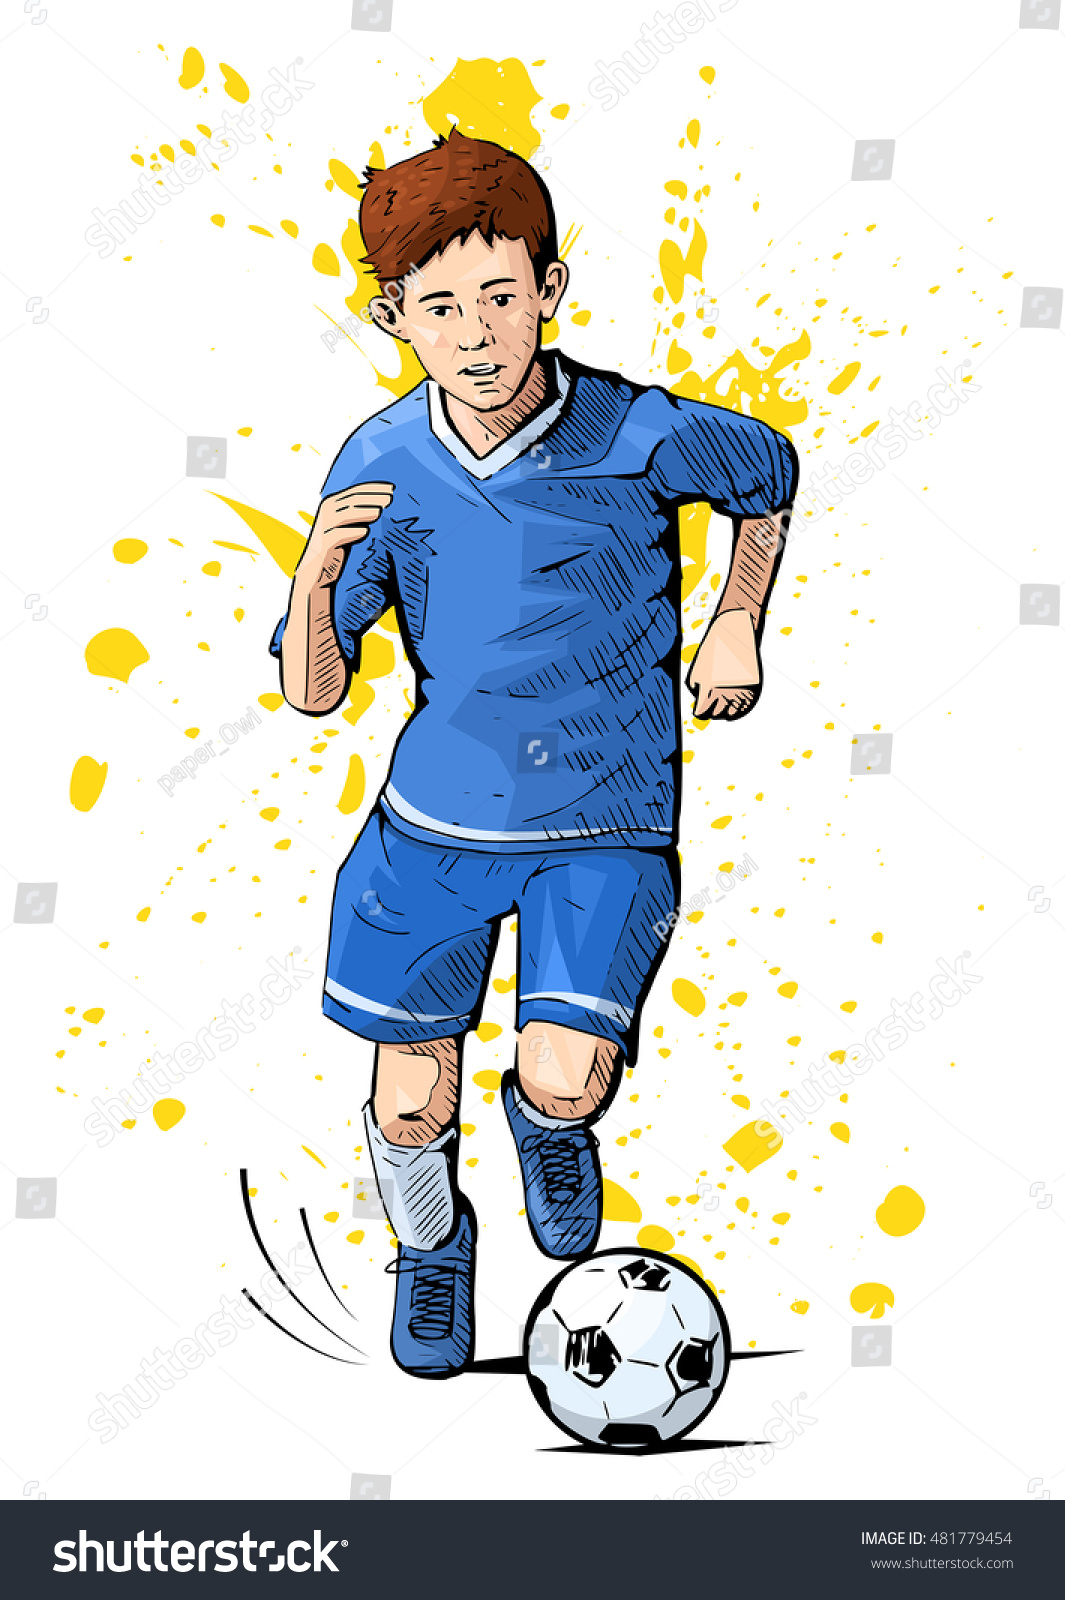 サッカーをしている子供のベクターイラスト 美しいスポーツをテーマにしたポスター ボールを持って走る少年 夏のスポーツ 健康的なライフスタイル サッカー ユース リーグ のベクター画像素材 ロイヤリティフリー